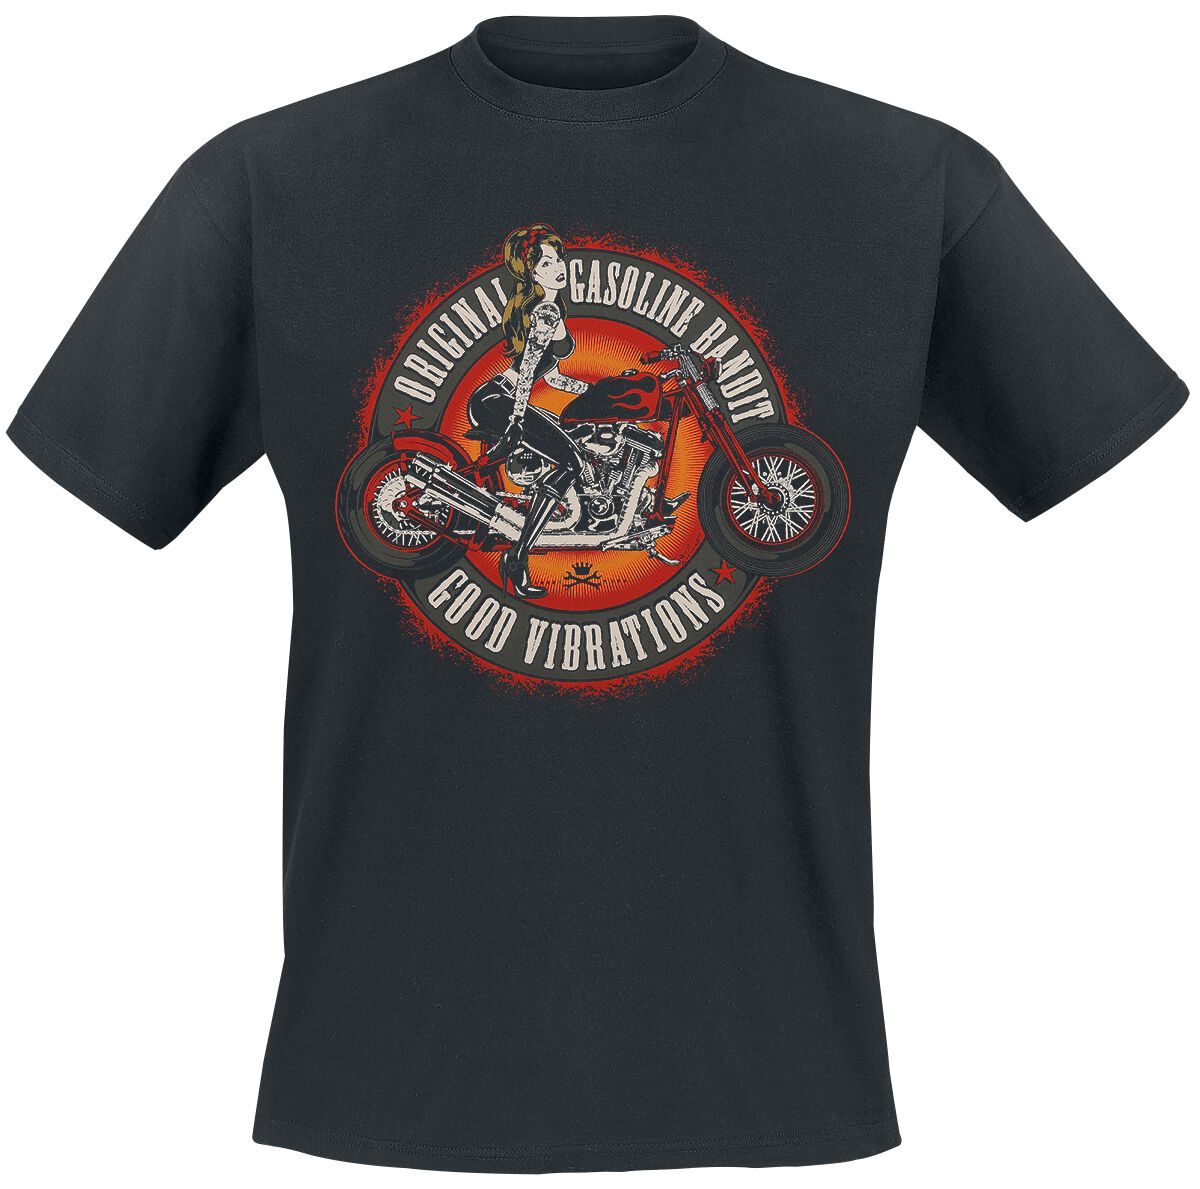 Gasoline Bandit - Rockabilly T-Shirt - Good Vibrations - S bis 3XL - für Männer - Größe XXL - schwarz